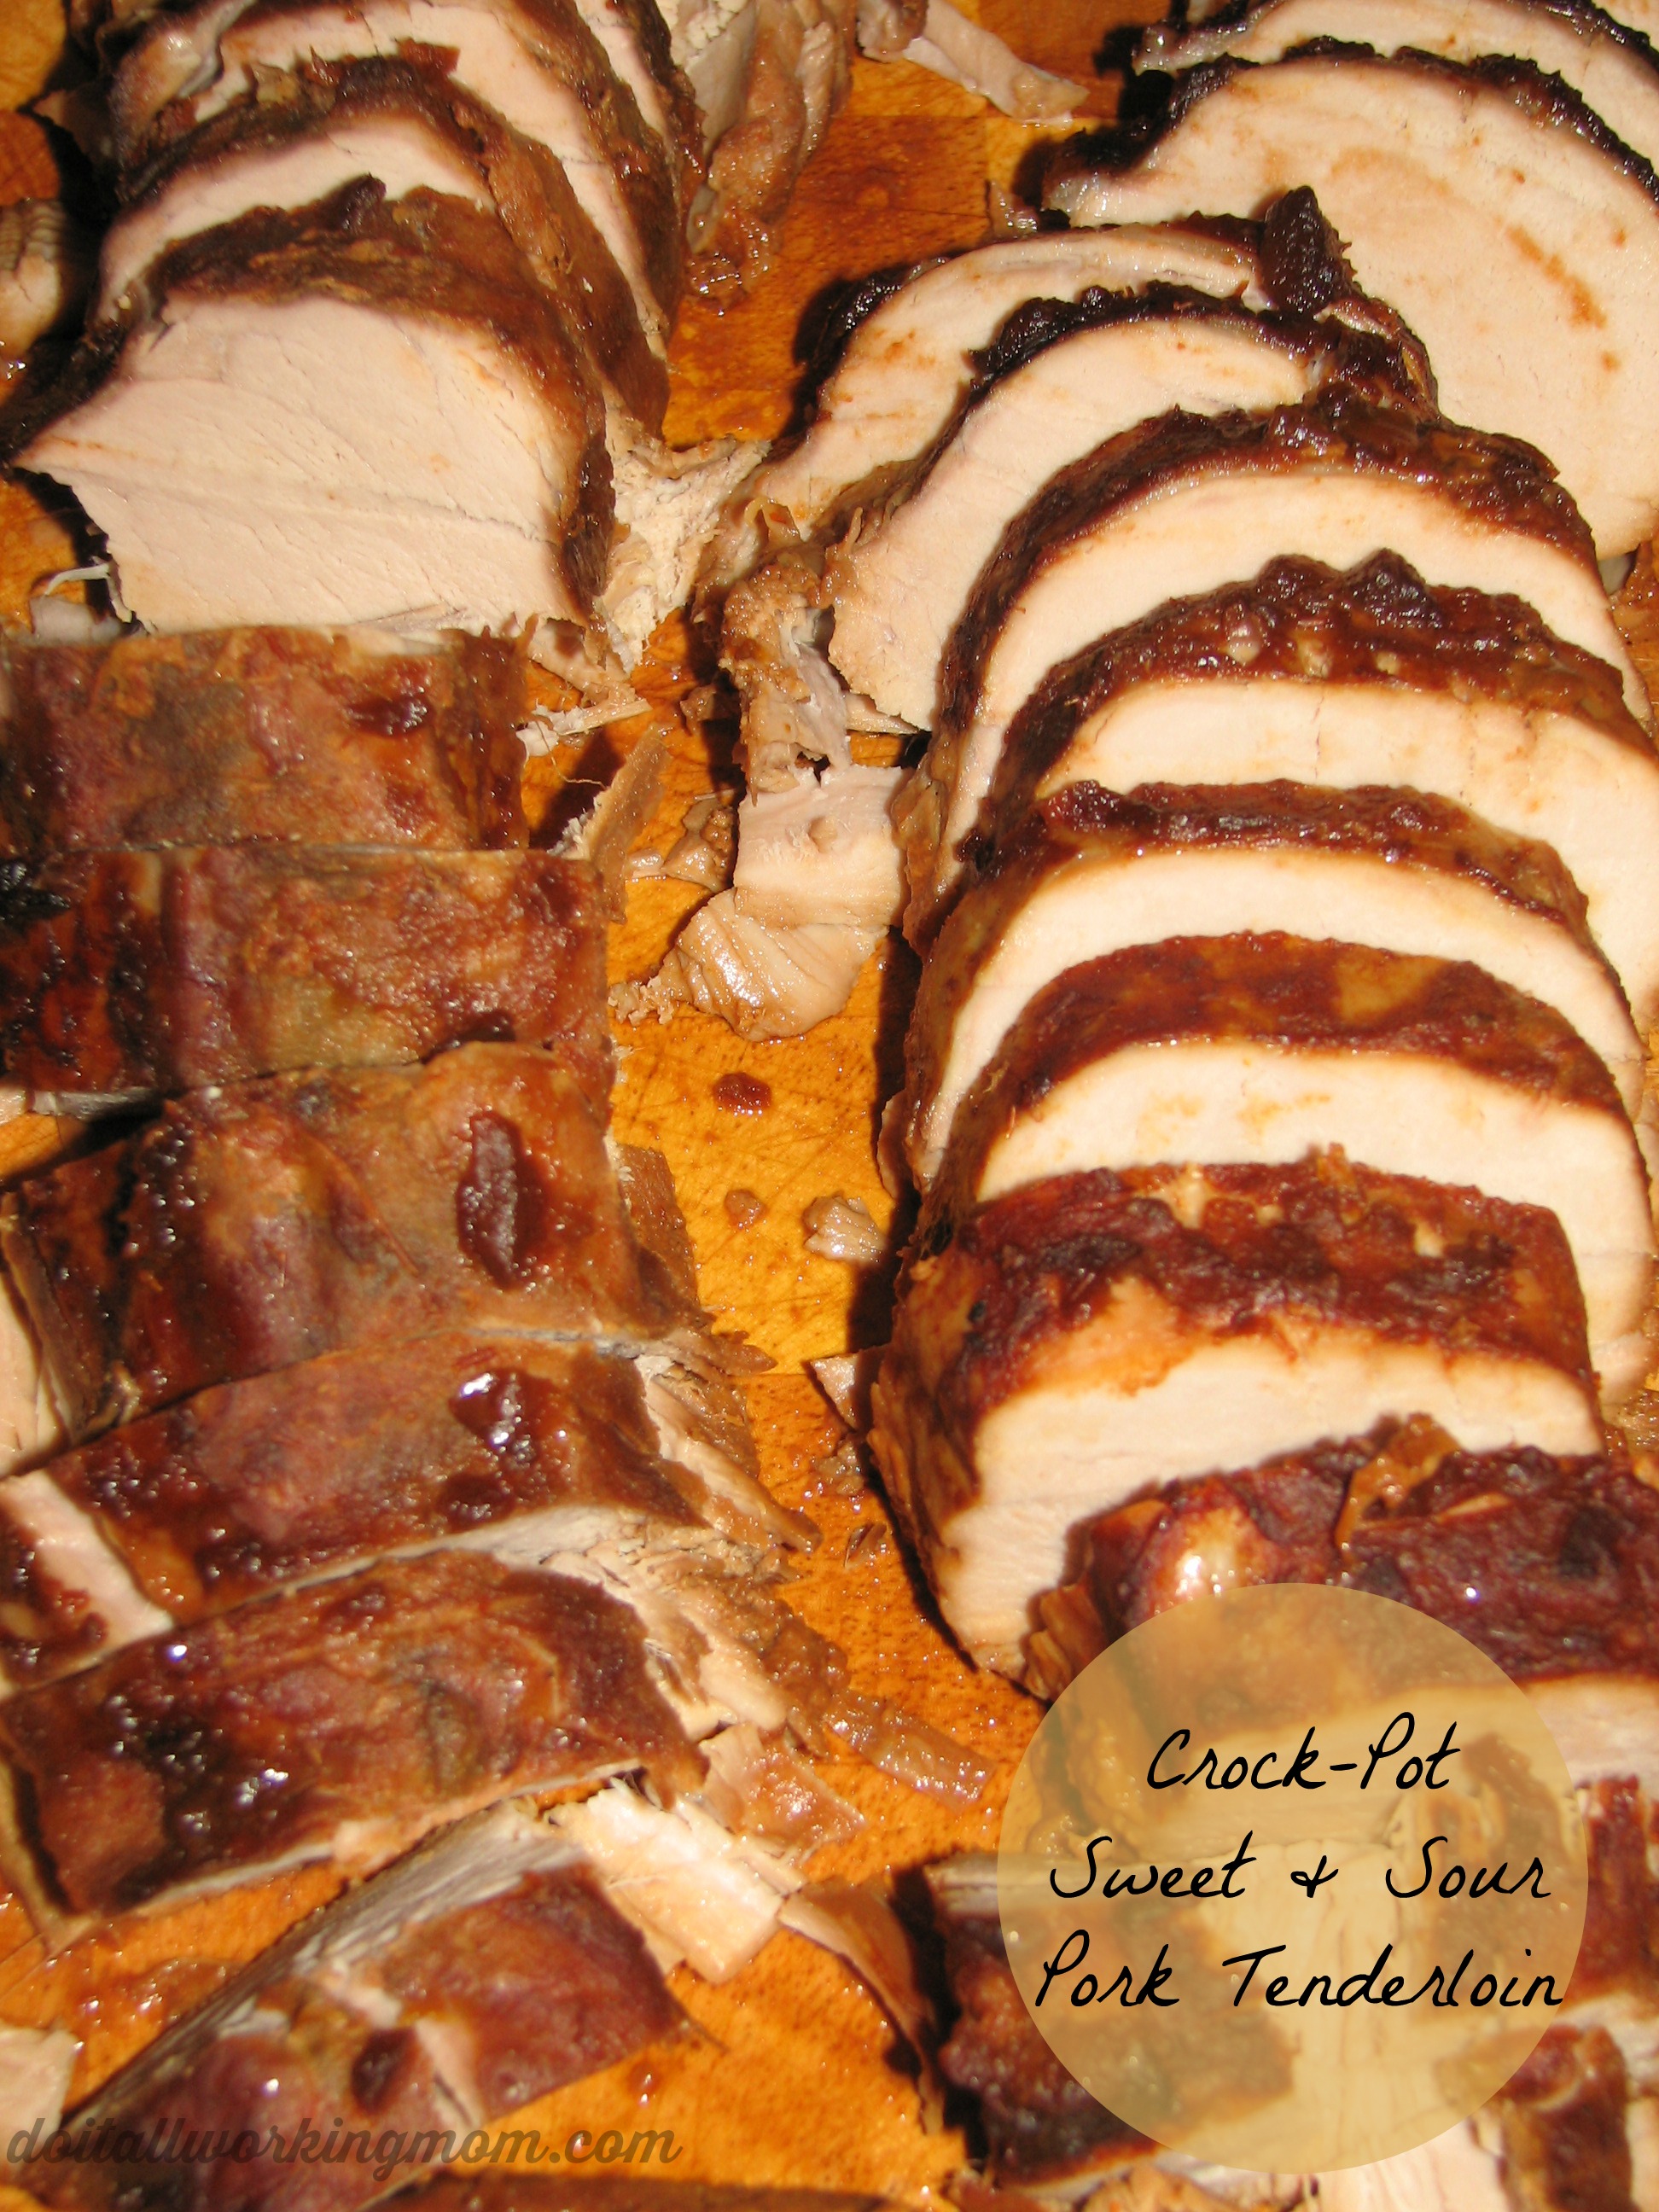 Crock-Pot Sweet and Sour Pork Tenderloin